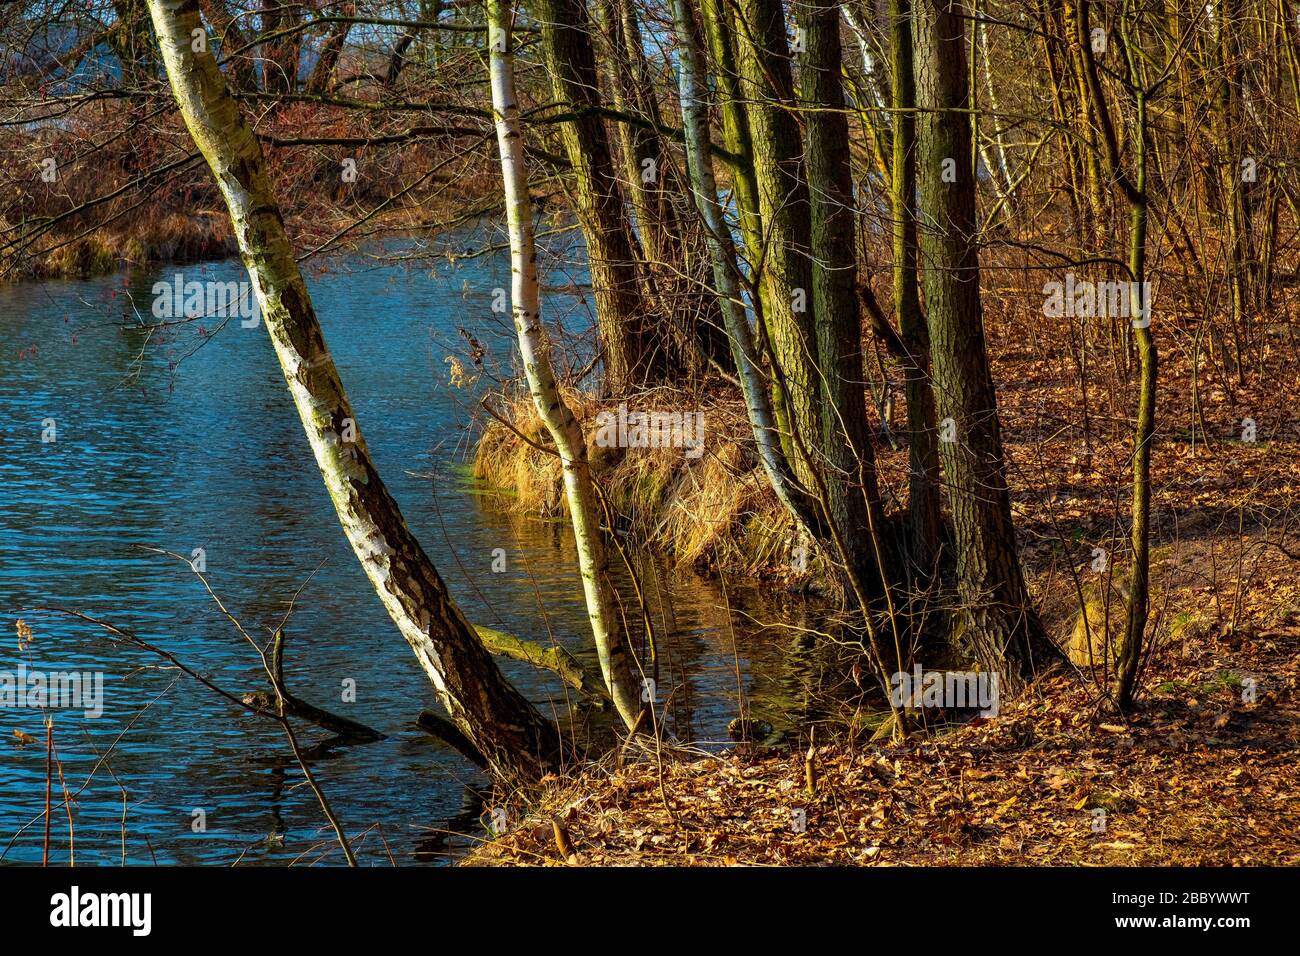 Primo paesaggio primaverile di foresta mista europea e zone umide presso la riserva naturale del fiume Czarna nella regione di Mazovia in Polonia Foto Stock